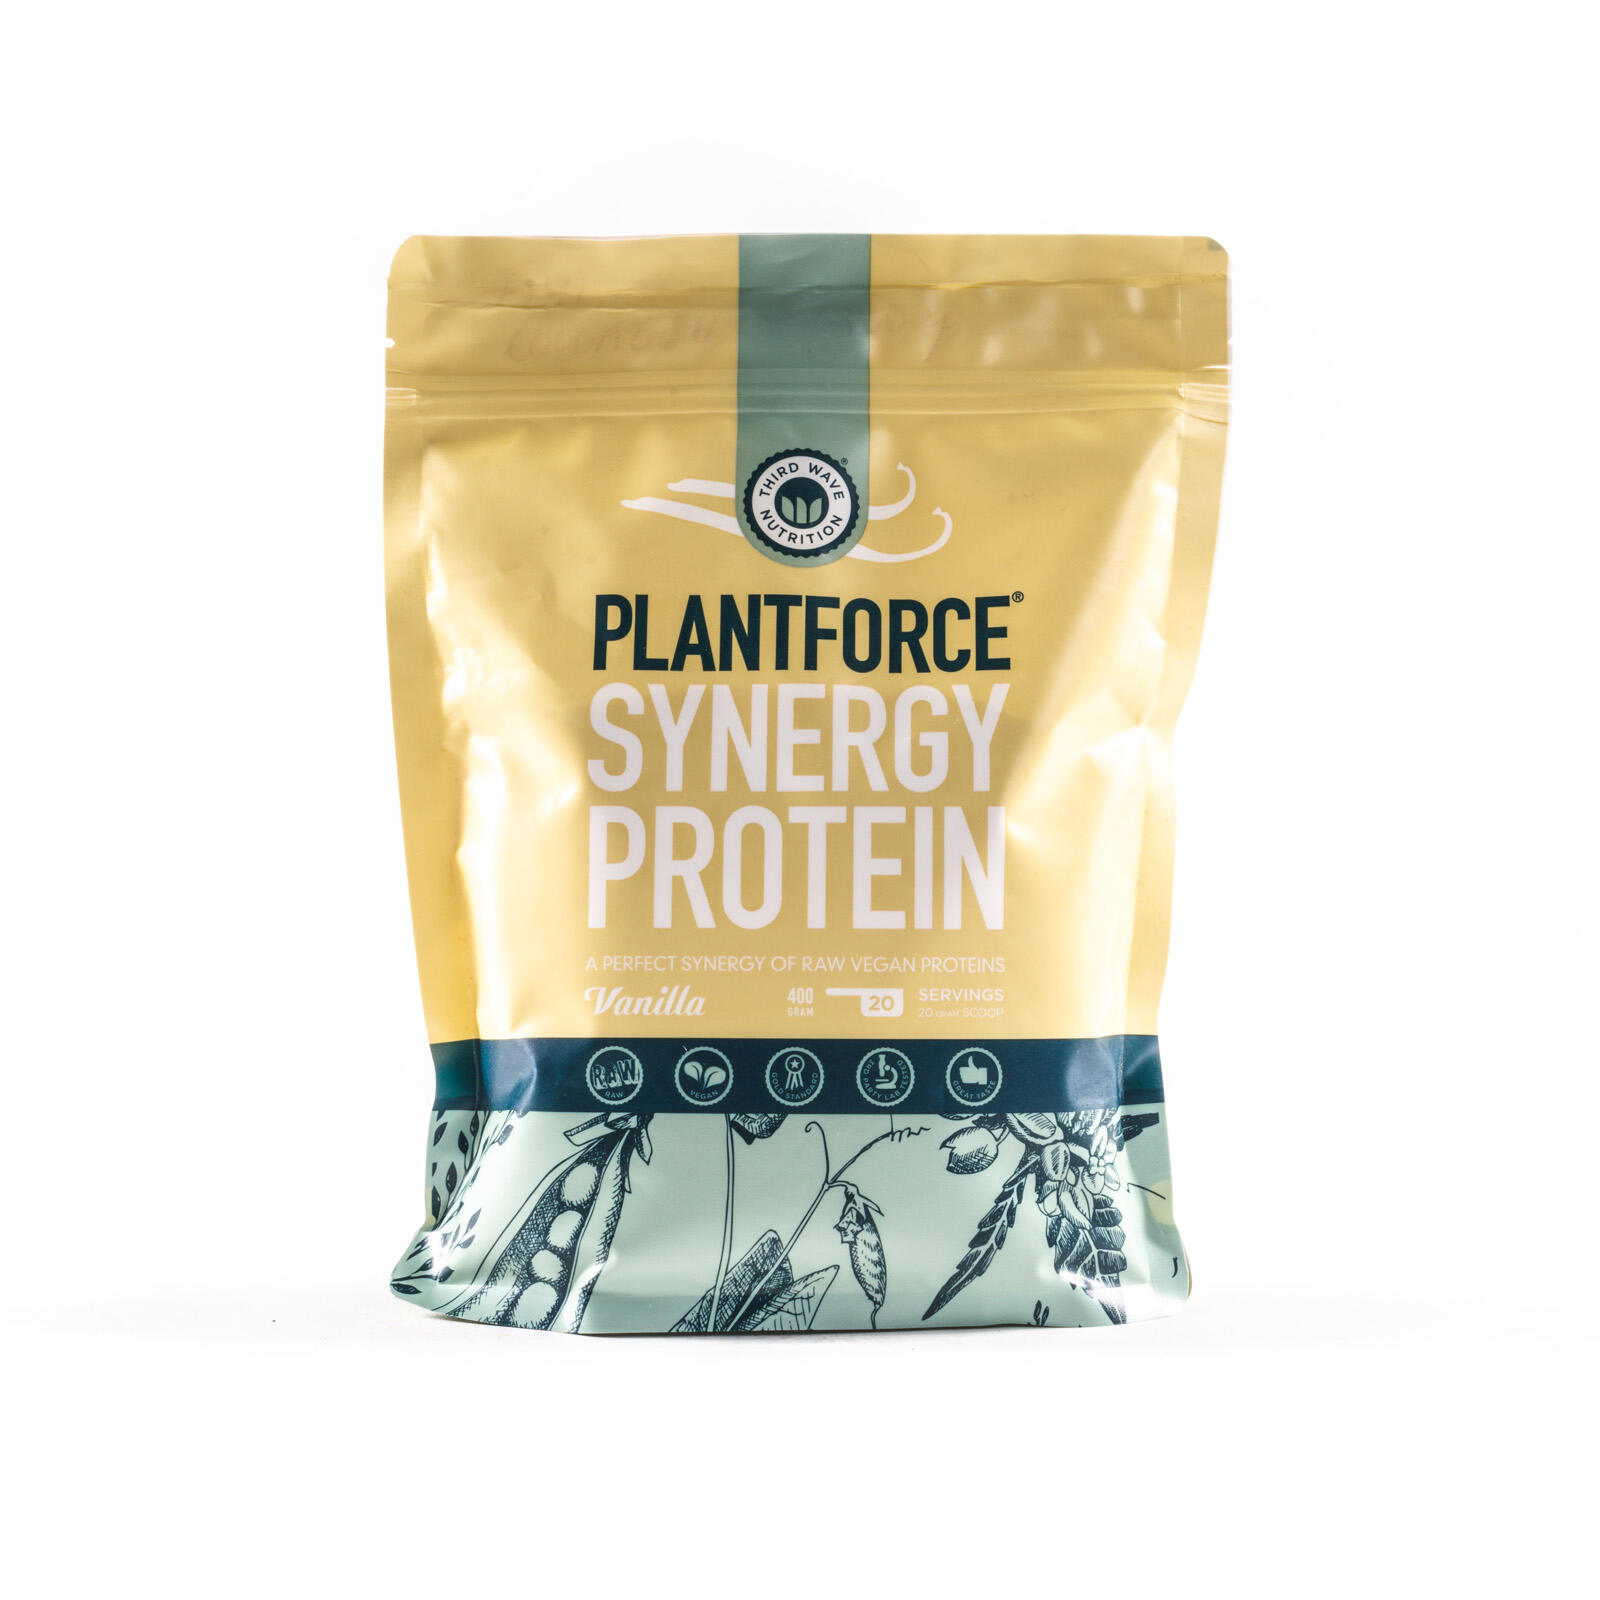 Billede af Protein vanilje Plantforce Synergy 400 gram